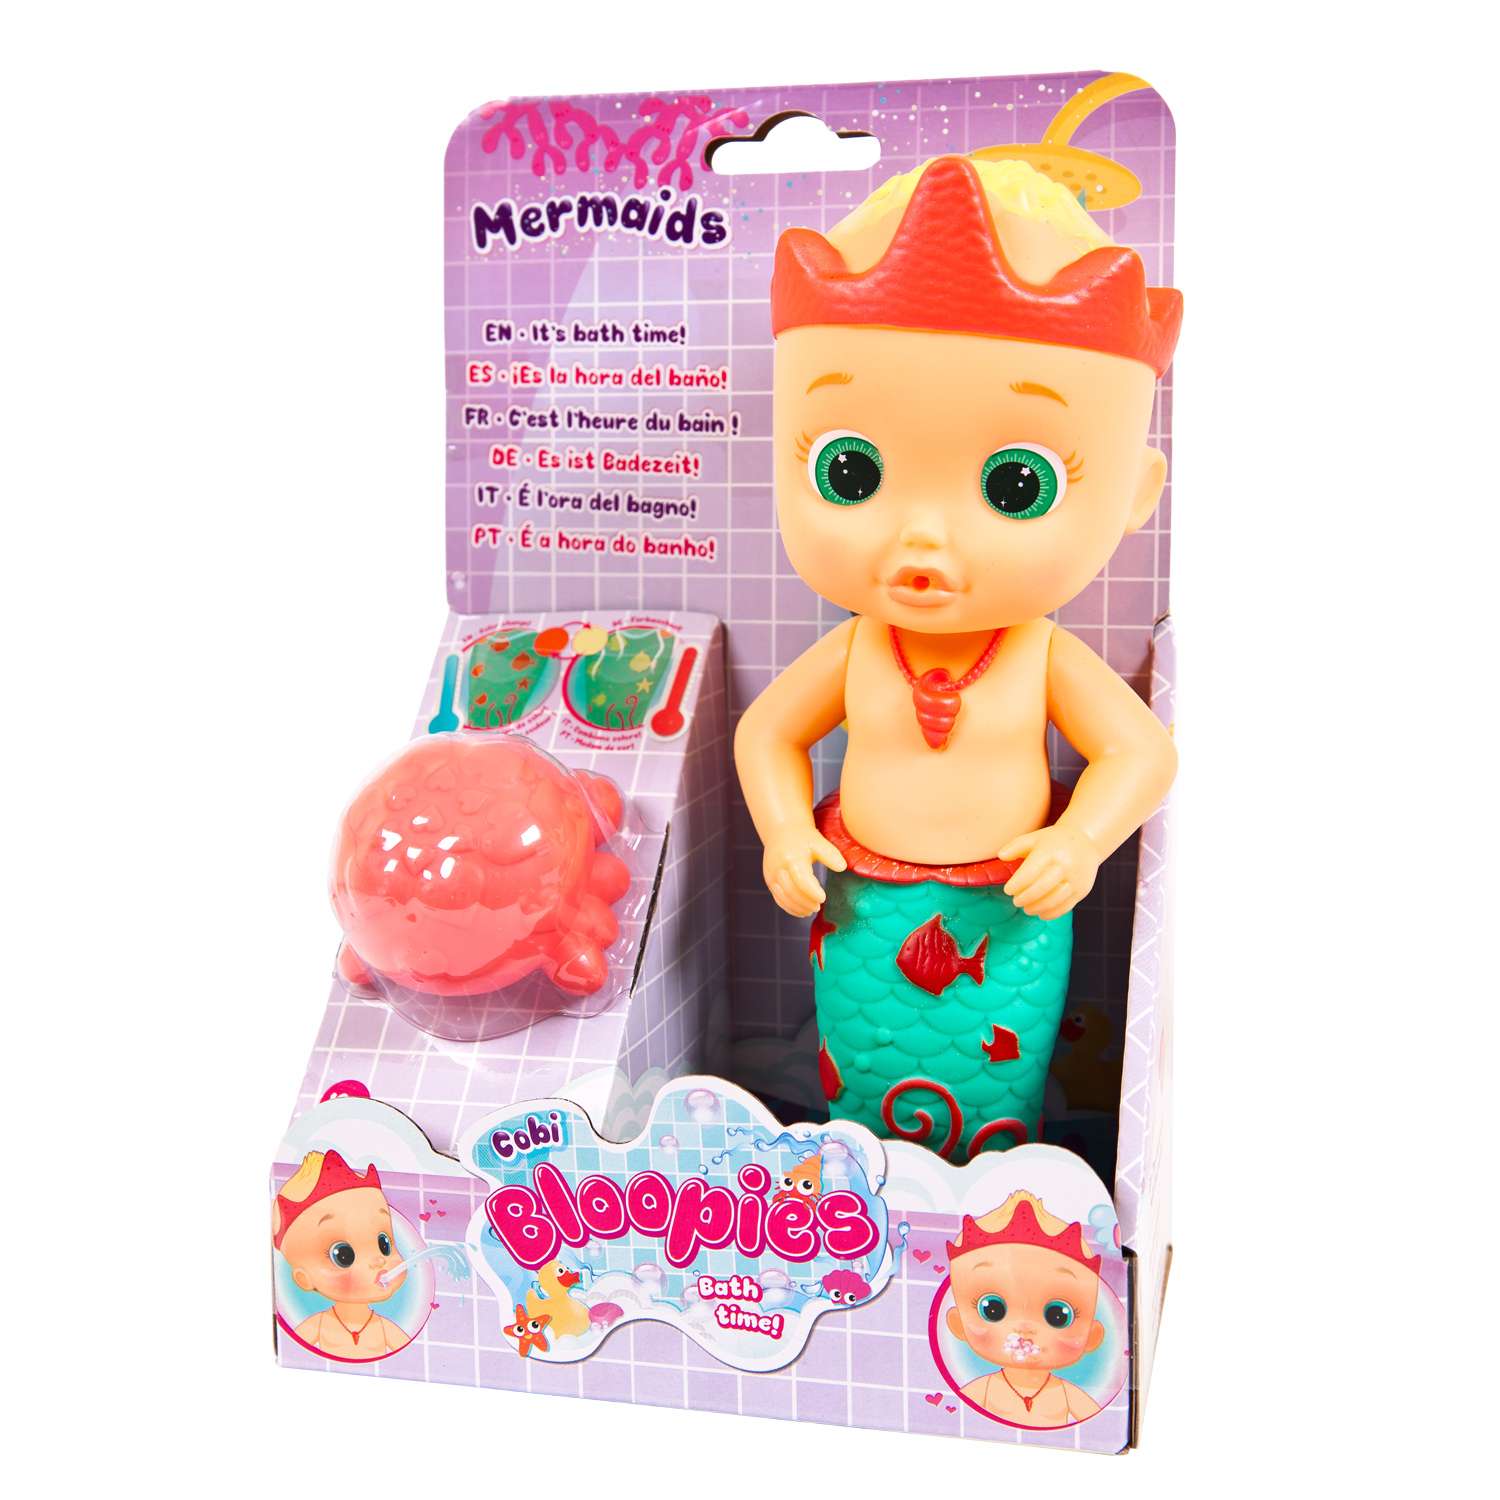 Кукла IMC Toys Bloopies для купания Cobi русалочка 26 см 99678 - фото 2